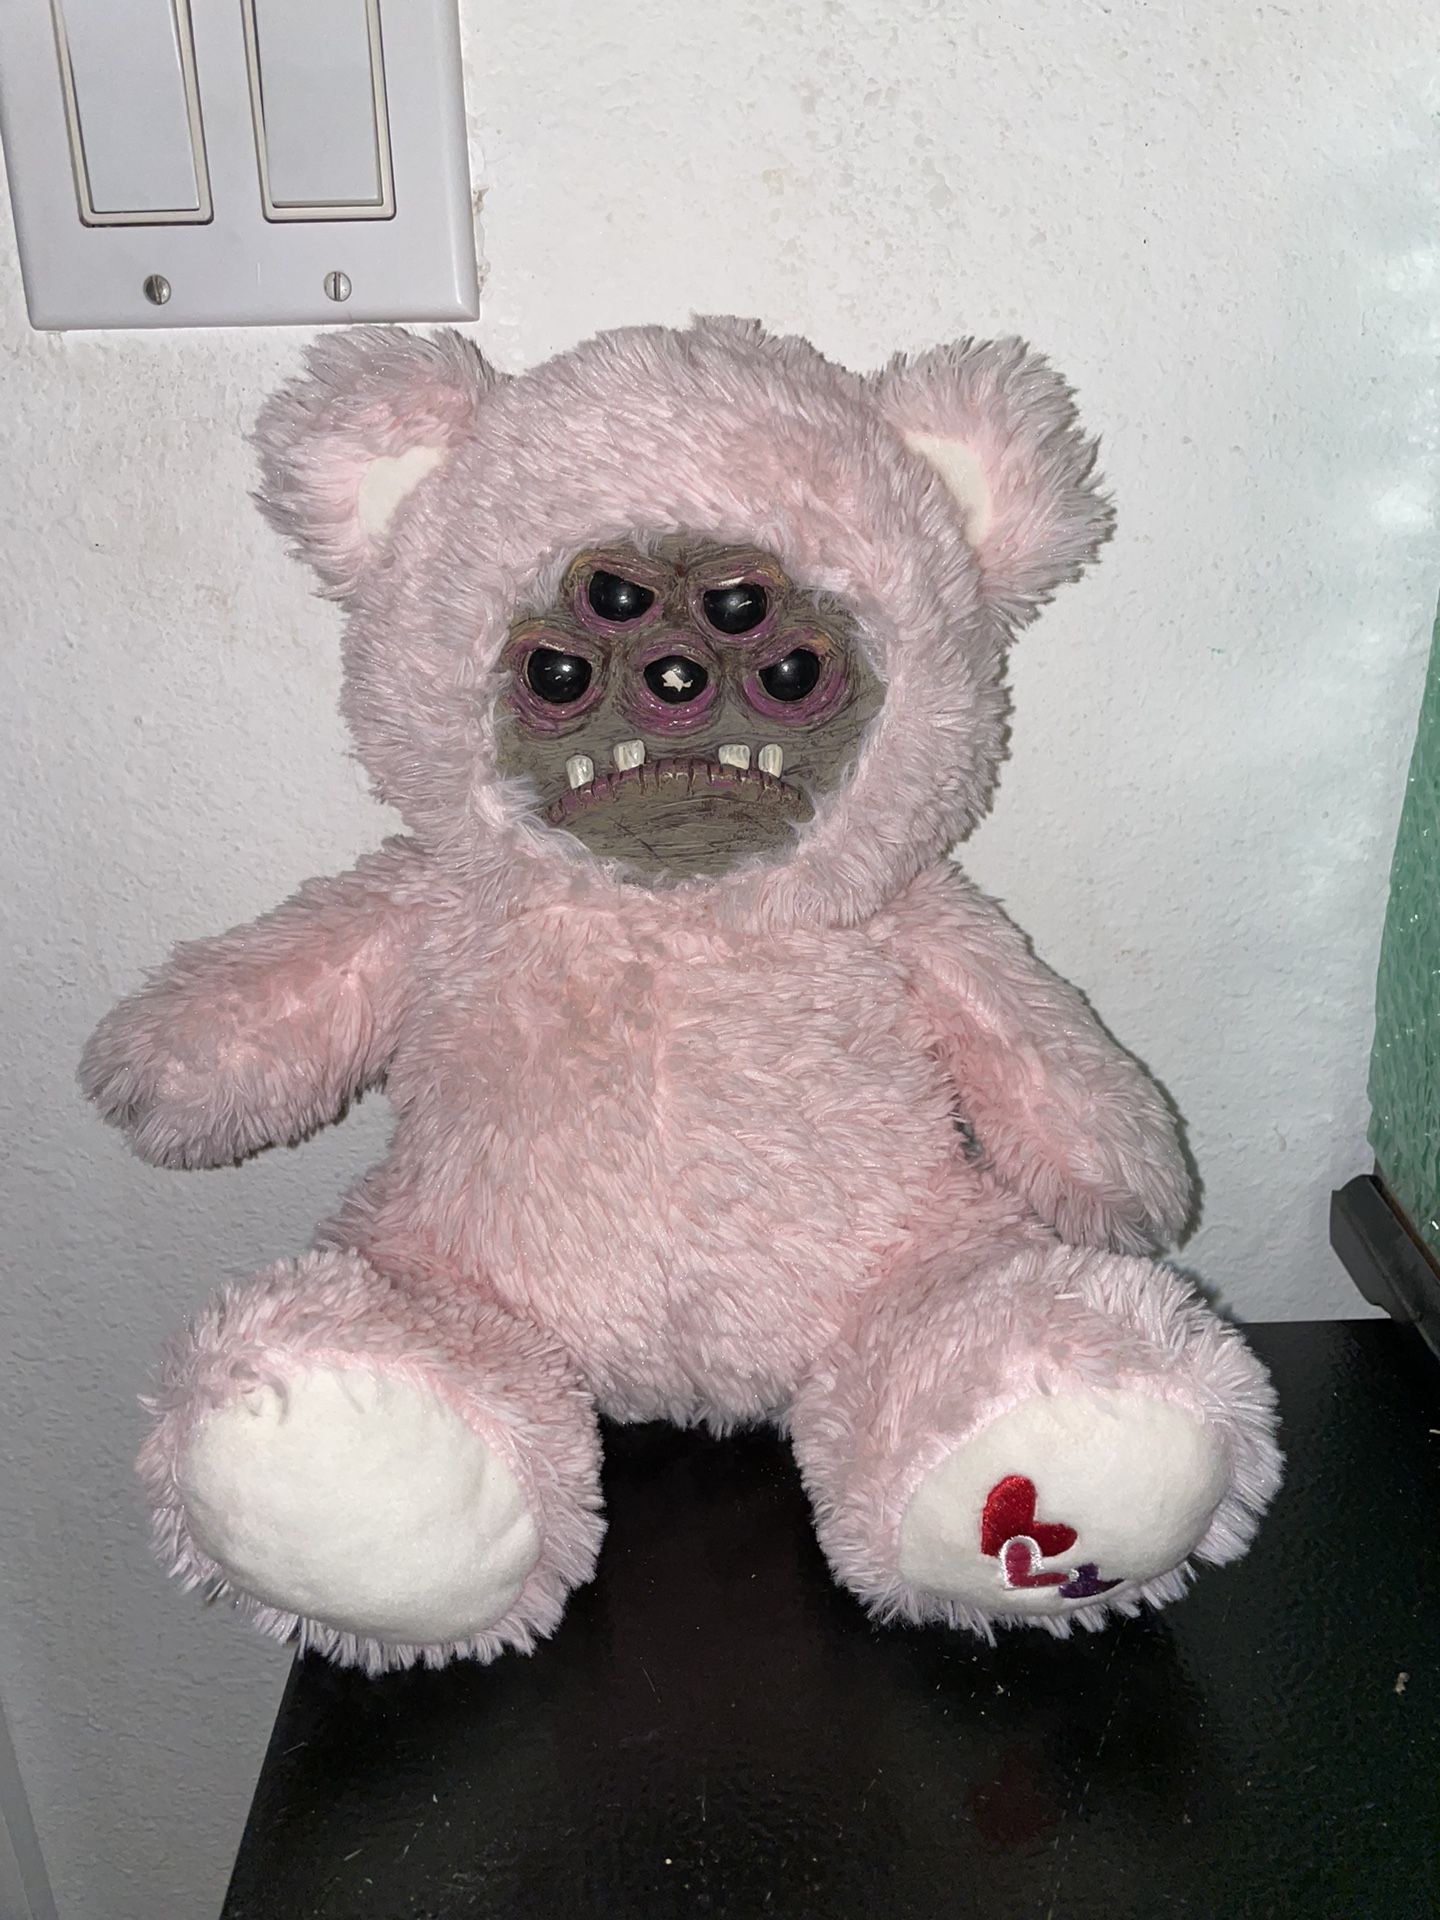 Cute Monster Clay Face Teddy Bear Plush Handmade